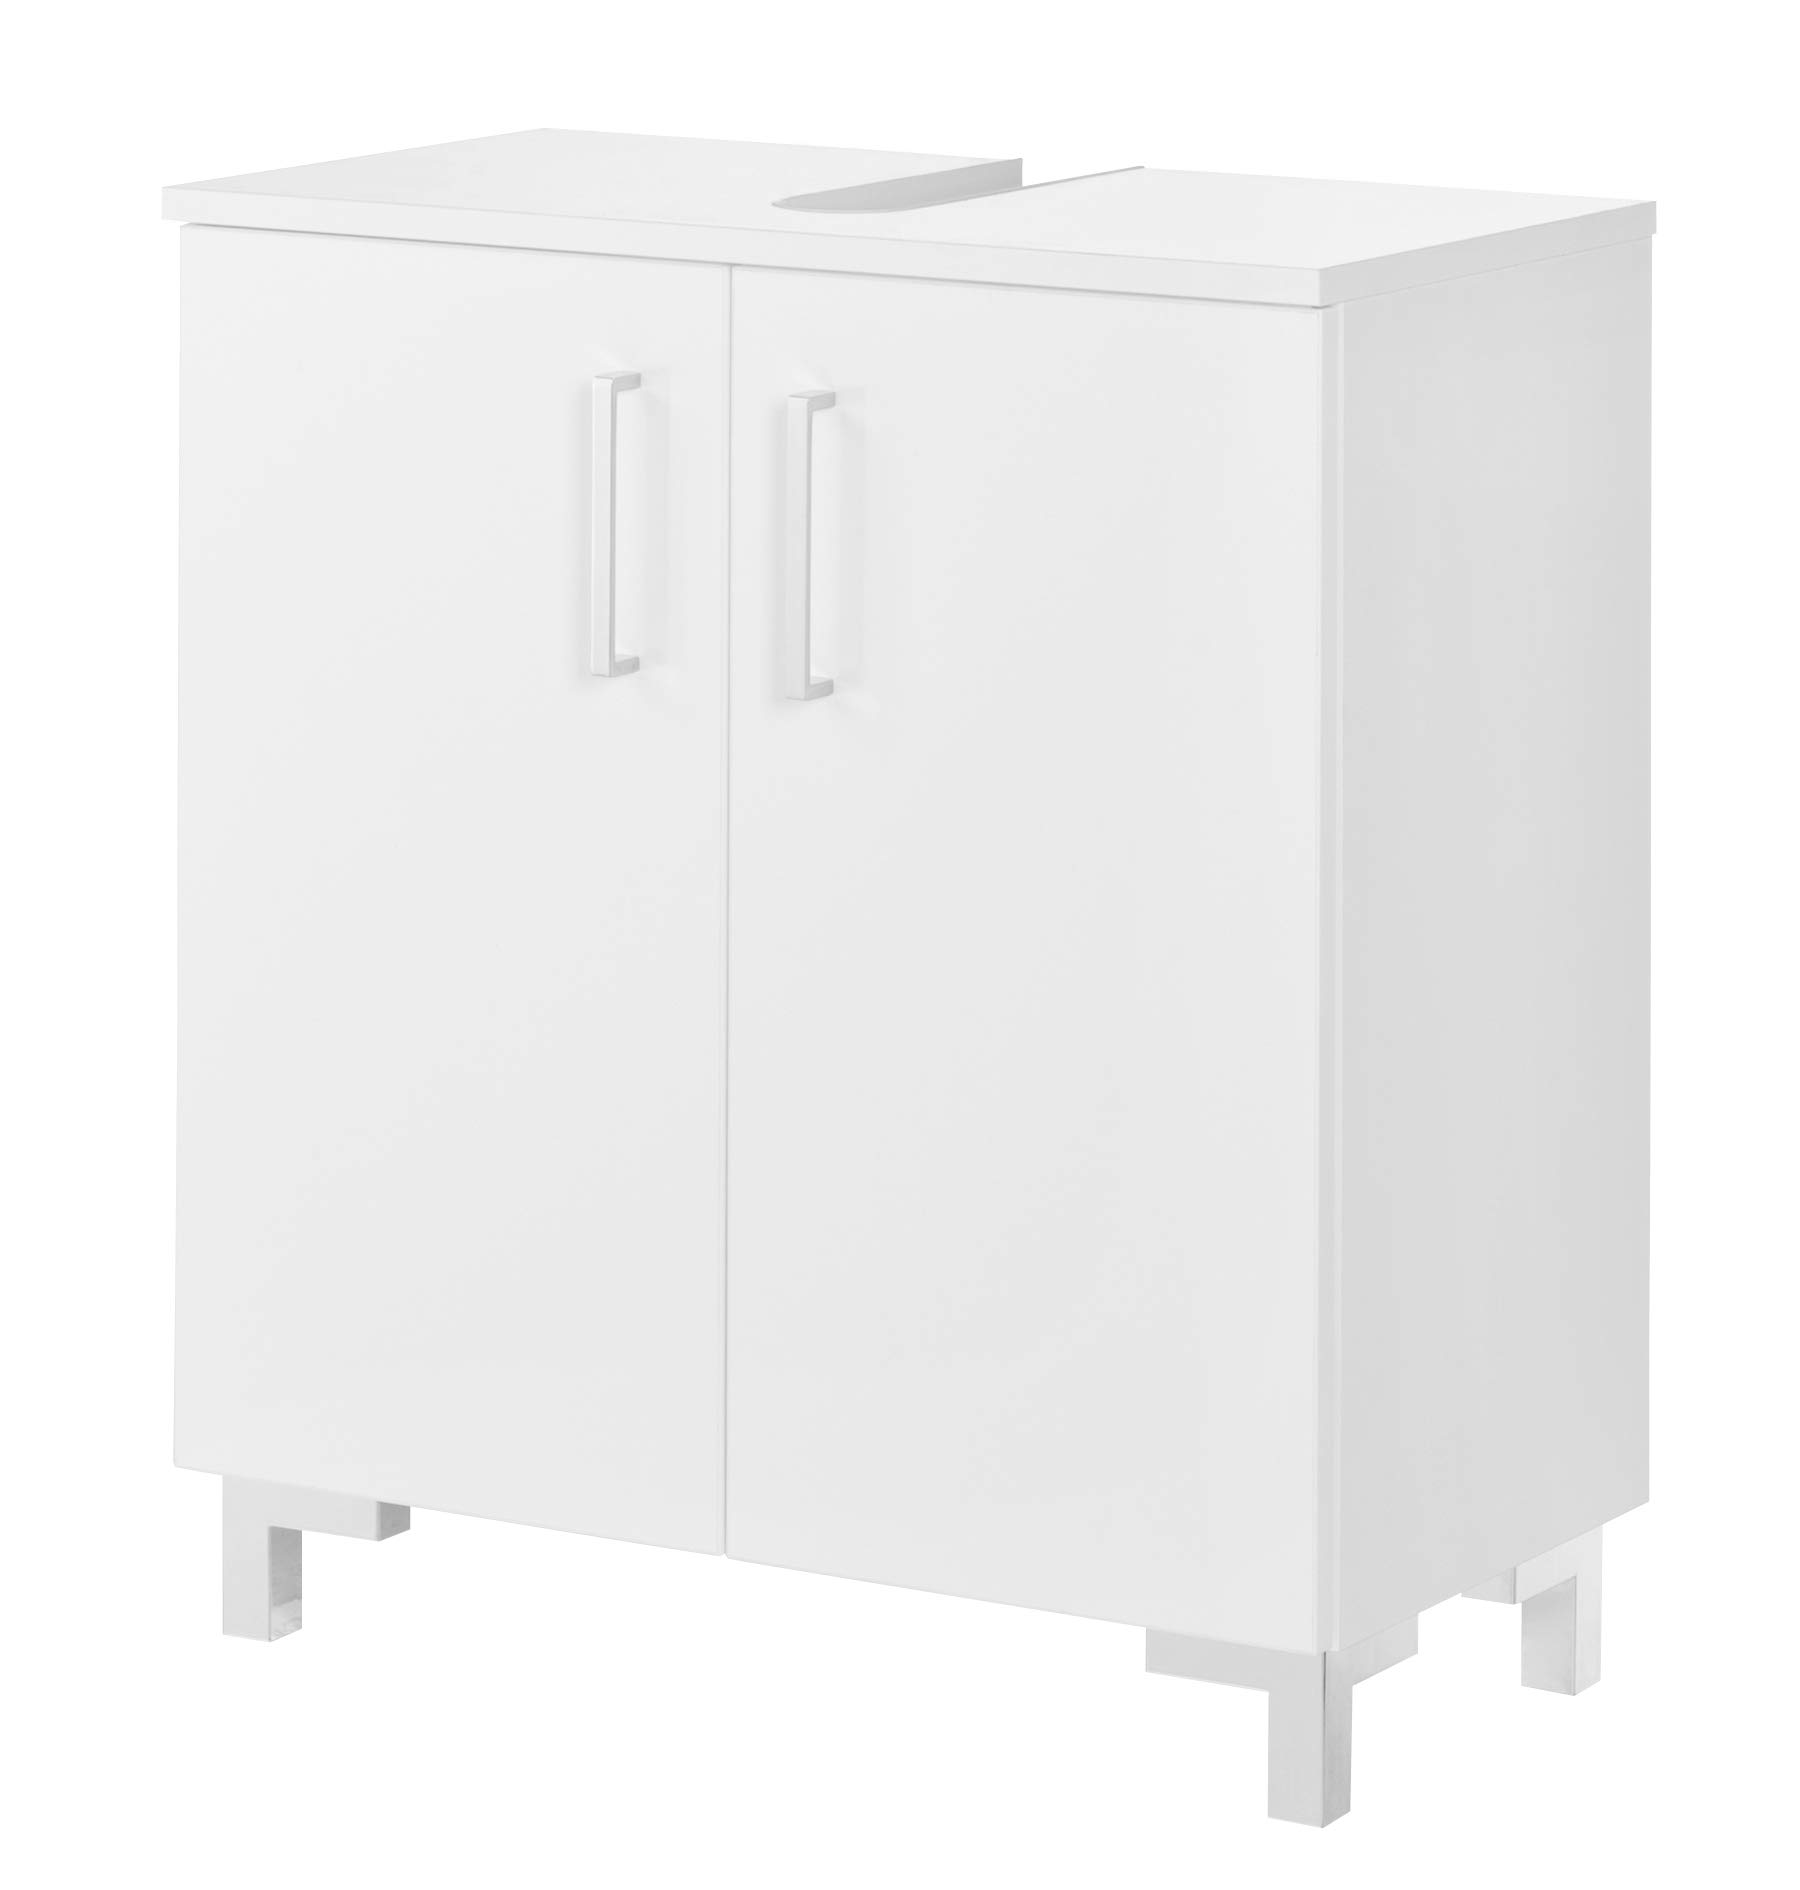 FACKELMANN Waschtischunterschrank Atlanta/Schrank mit gedämpften Scharniere/Maße (B x H x T): ca. 60,5 x 68 x 32,5 cm/hochwertiger Schrank fürs Bad mit 2 Türen/Korpus: Weiß/Front: Weiß